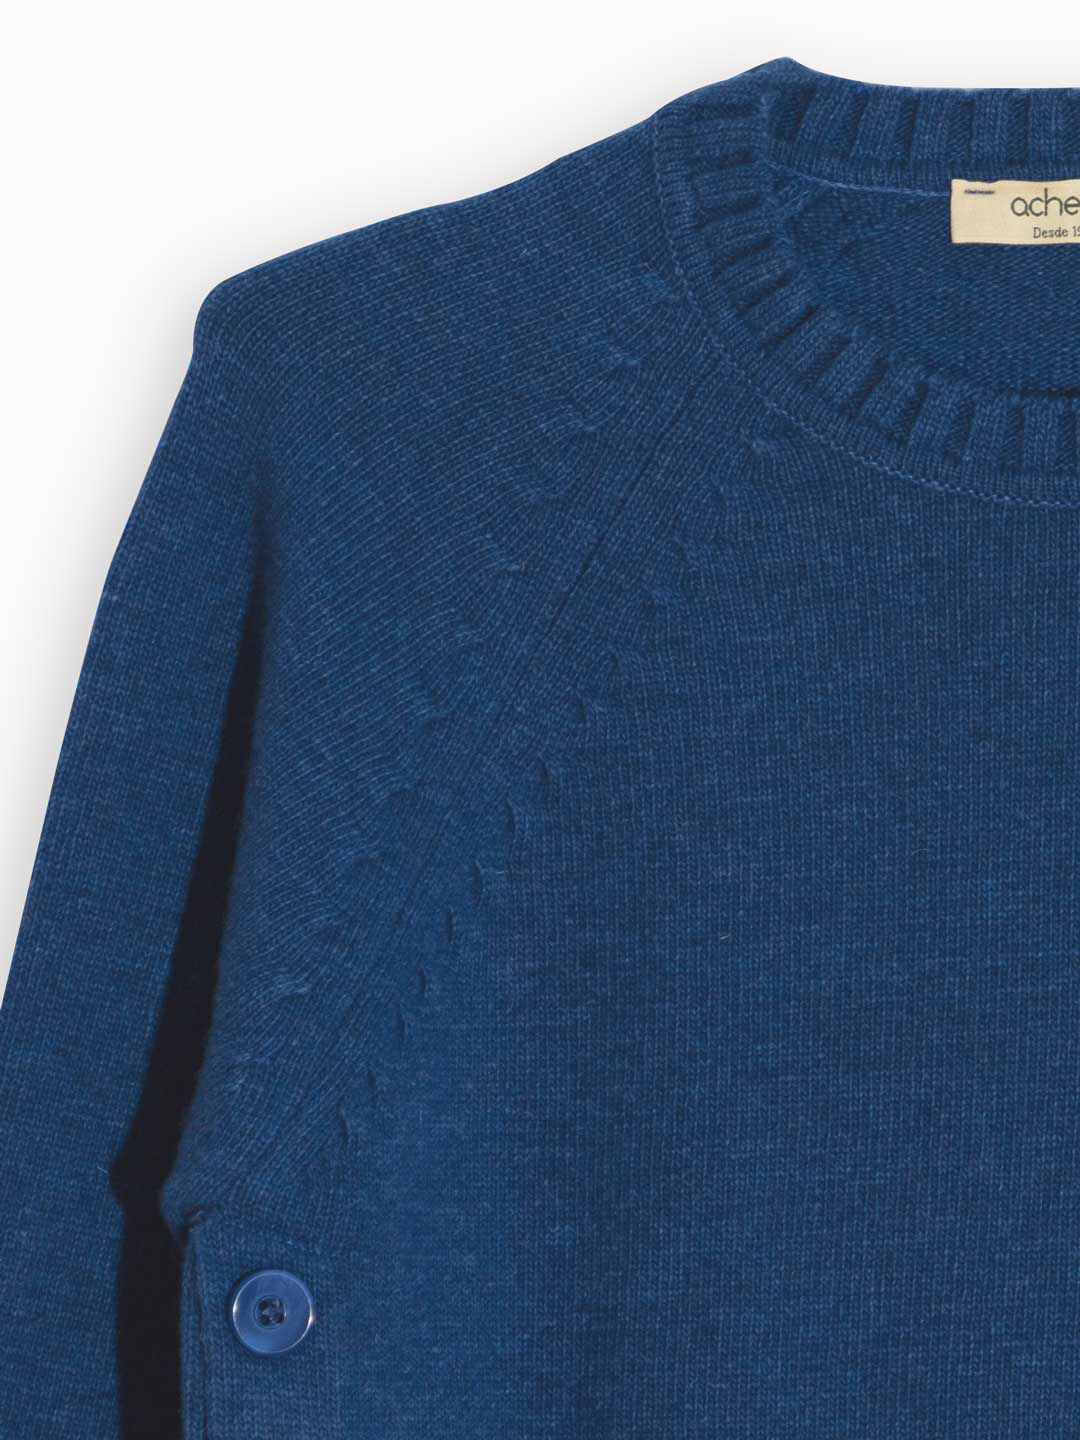 Jersey de lana de cordero con grietas y botones laterales